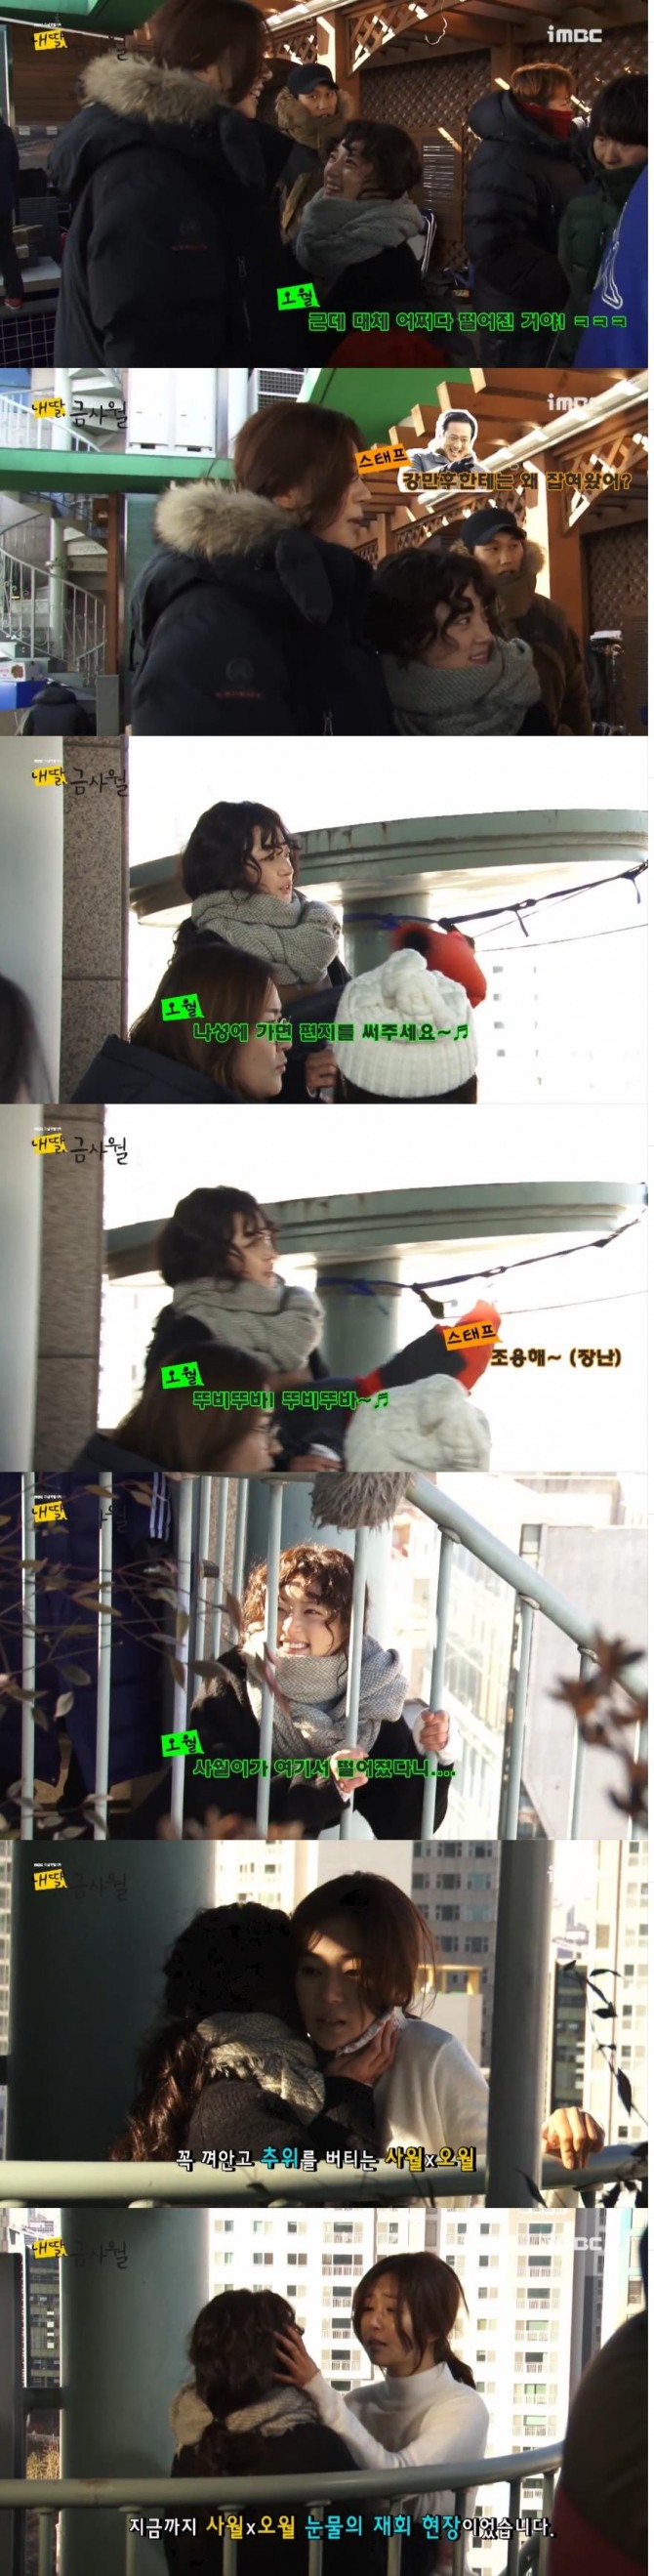 12일 공개된 MBC주말극 '내딸 금사월'메이킹 영상에서는 흥넘치는 사월과 오월의 모습이 담겨 있다./사진=MBC방송 캡처